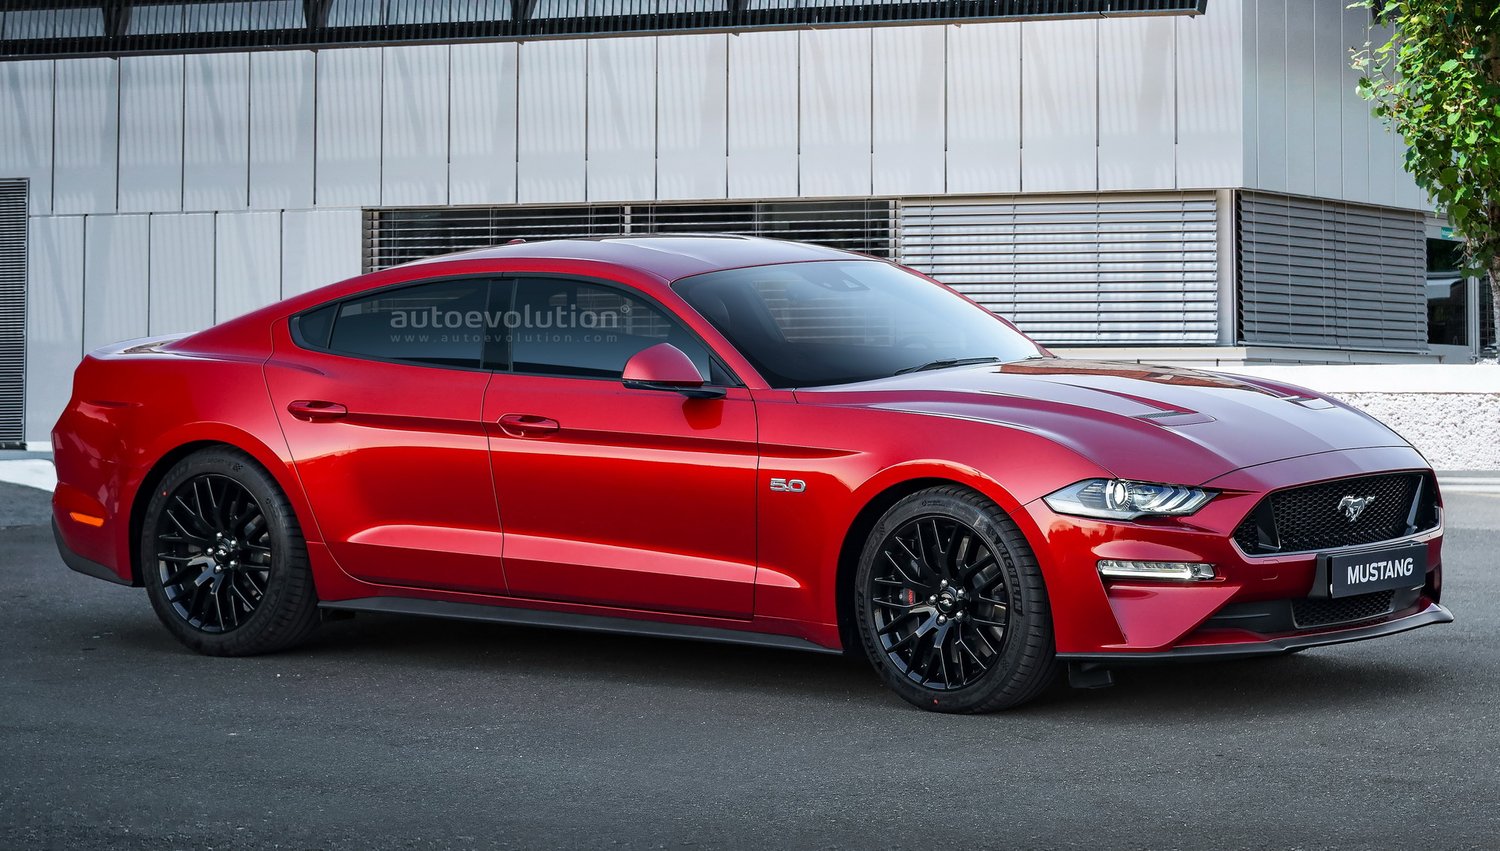 2022 Ford Mustang 4-Door Sports Sedan Rendering (autoevolution ...